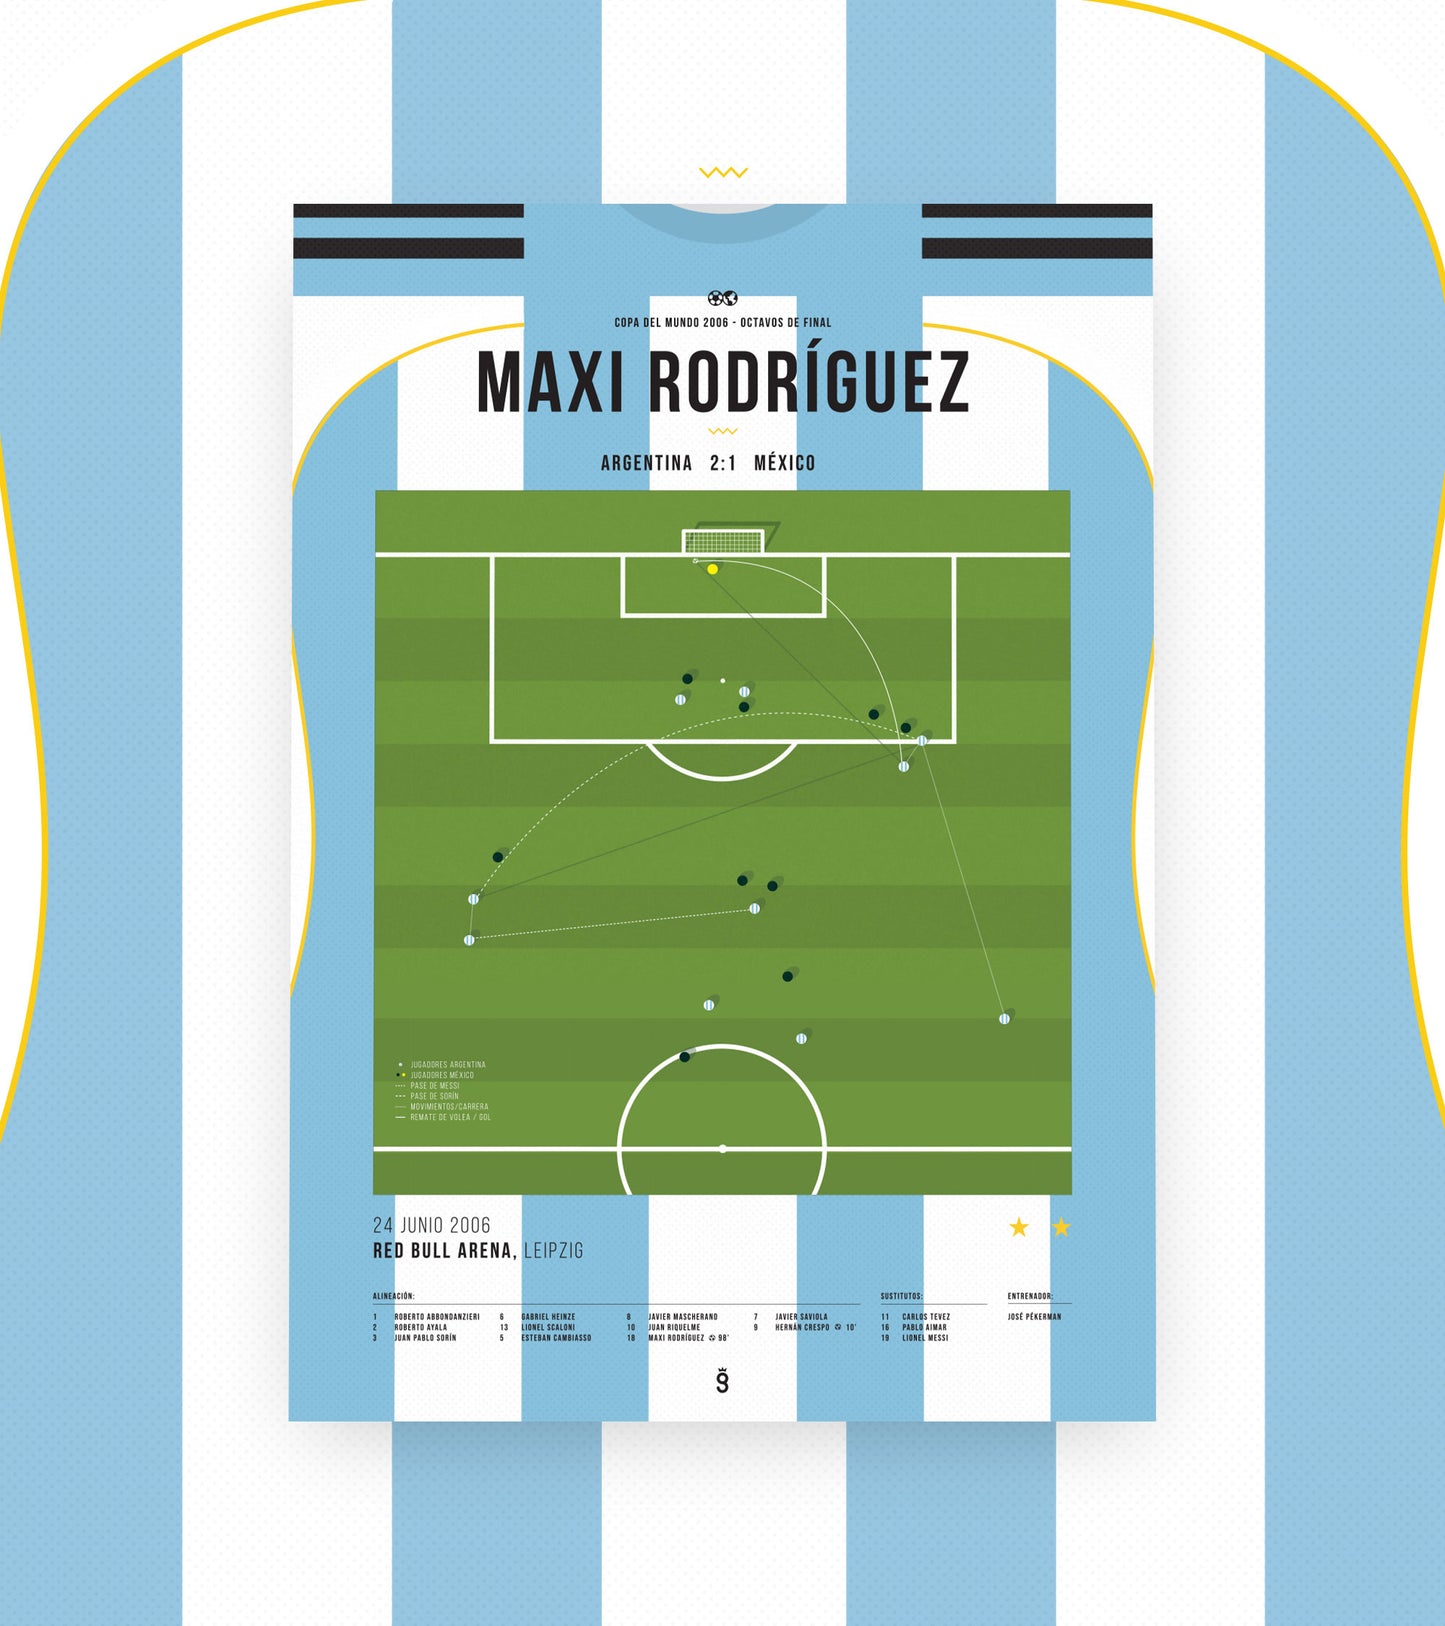 But merveilleux de Maxi Rodriguez